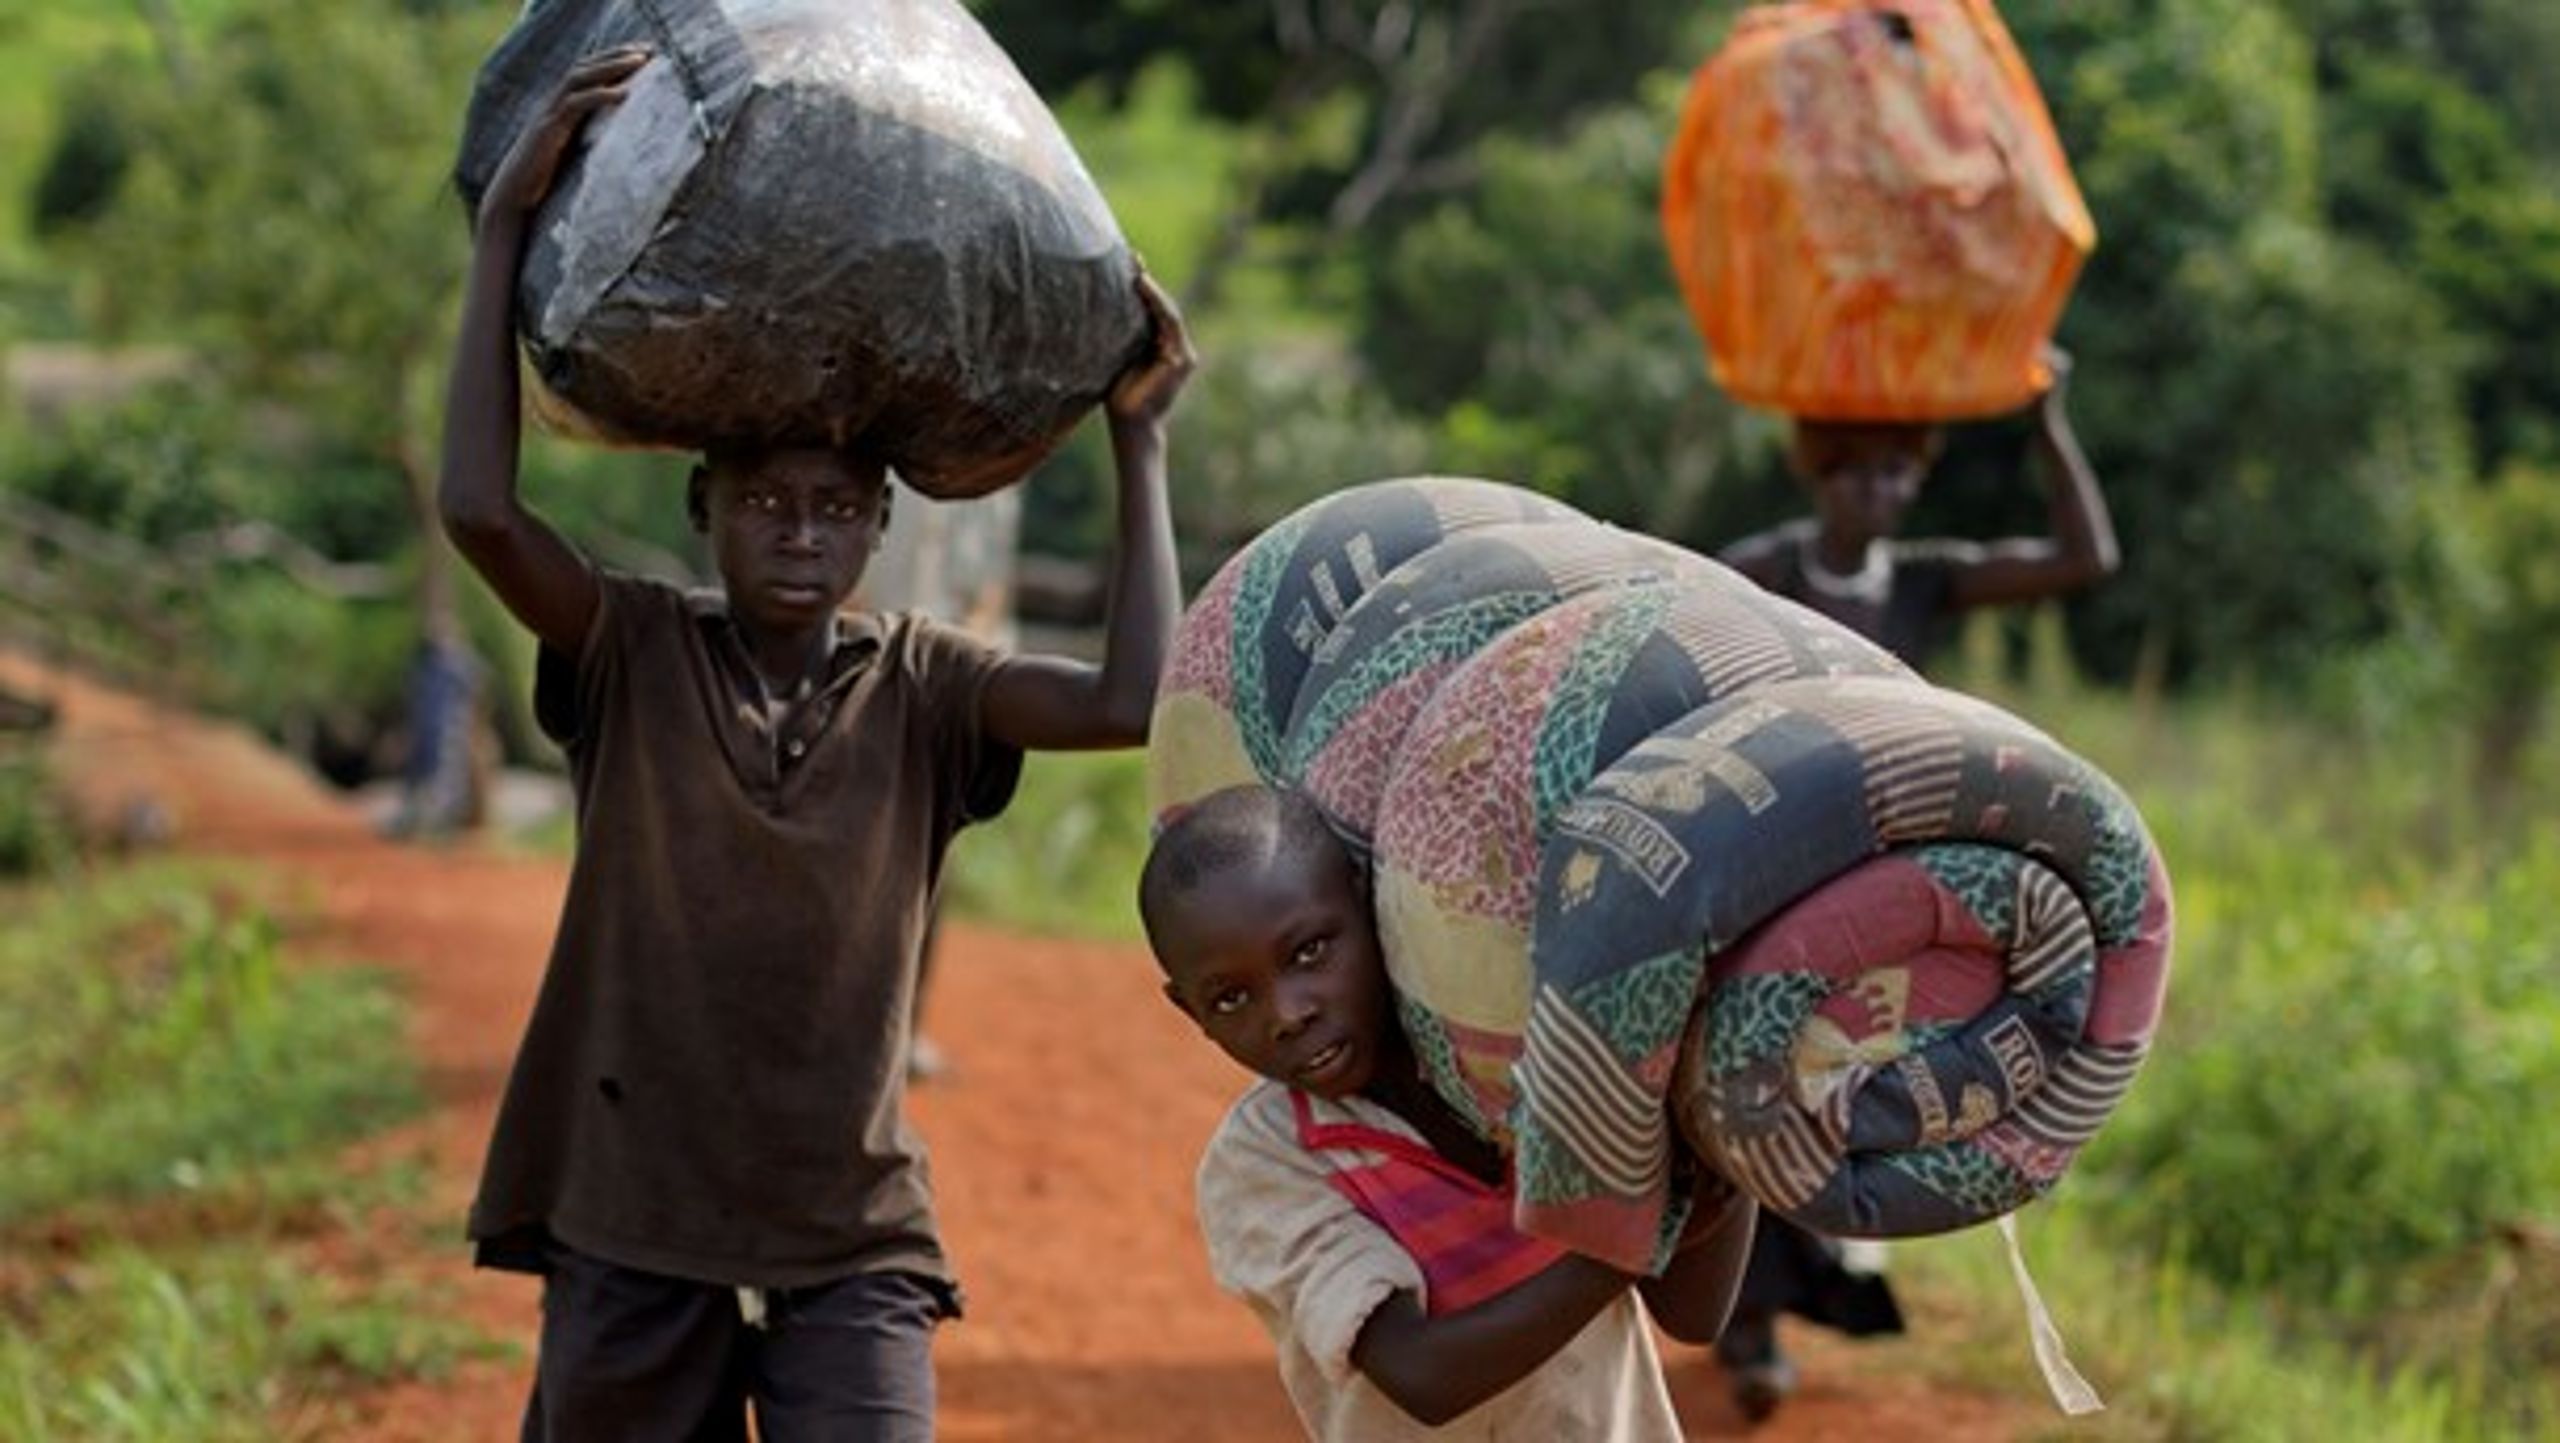 Regeringen sætter penge af til humanitær bistand i Uganda, hvor der lige nu befinder sig 1,3 millioner flygtninge.